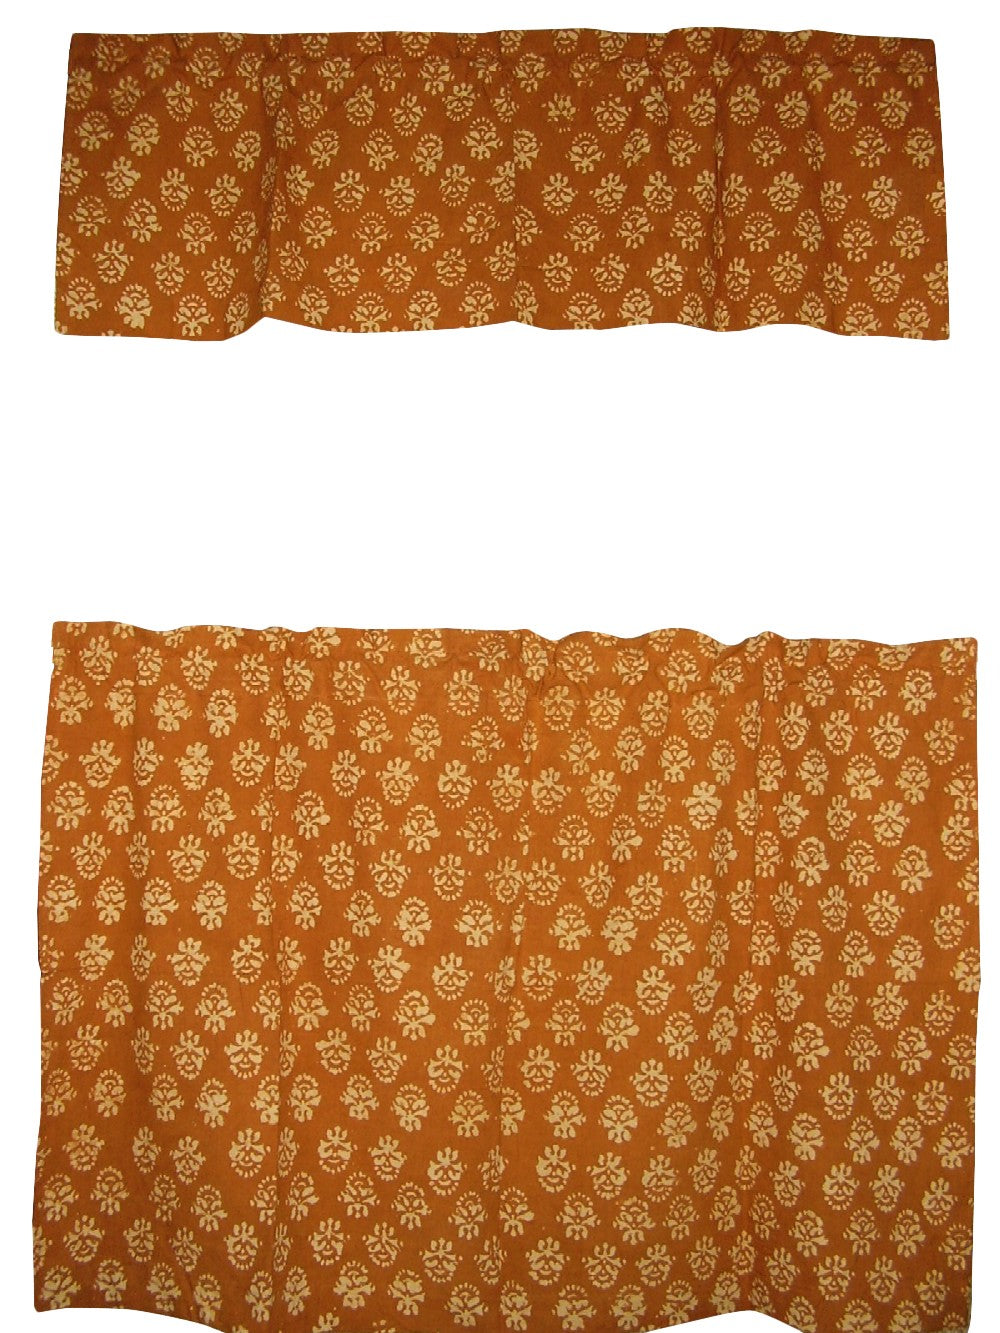 ผ้าม่านคาเฟ่ลาย Valance Block Print Cotton 44" x 30" สีน้ำตาล 